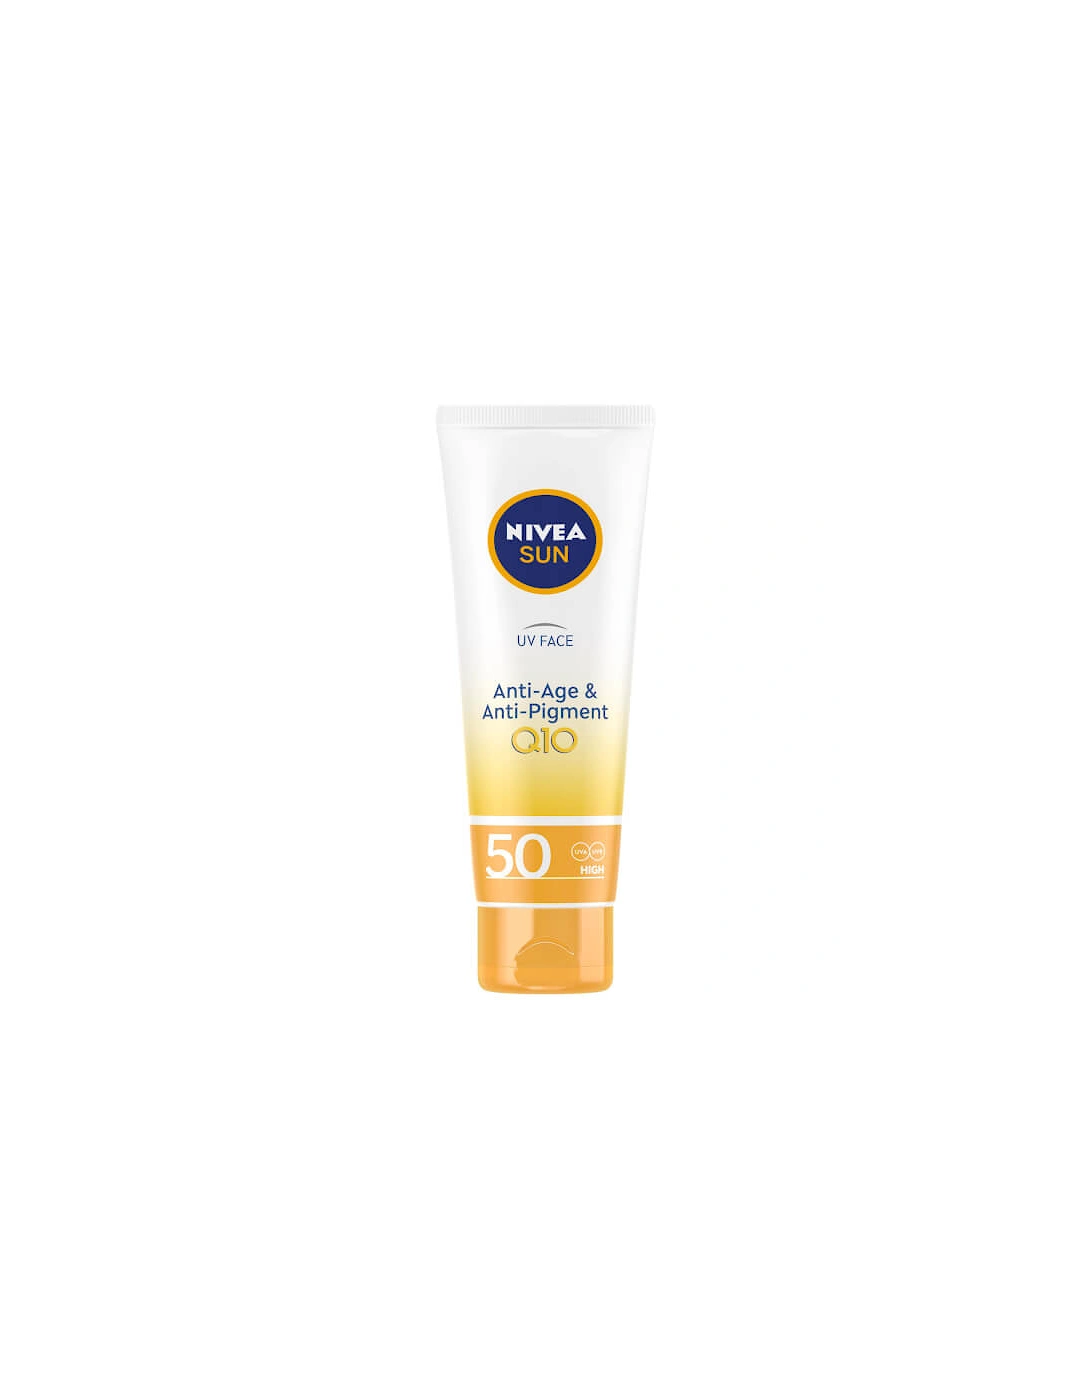 UV Face Q10 Anti-Age & Anti-Pigment Sun Cream SPF50 50ml, 2 of 1